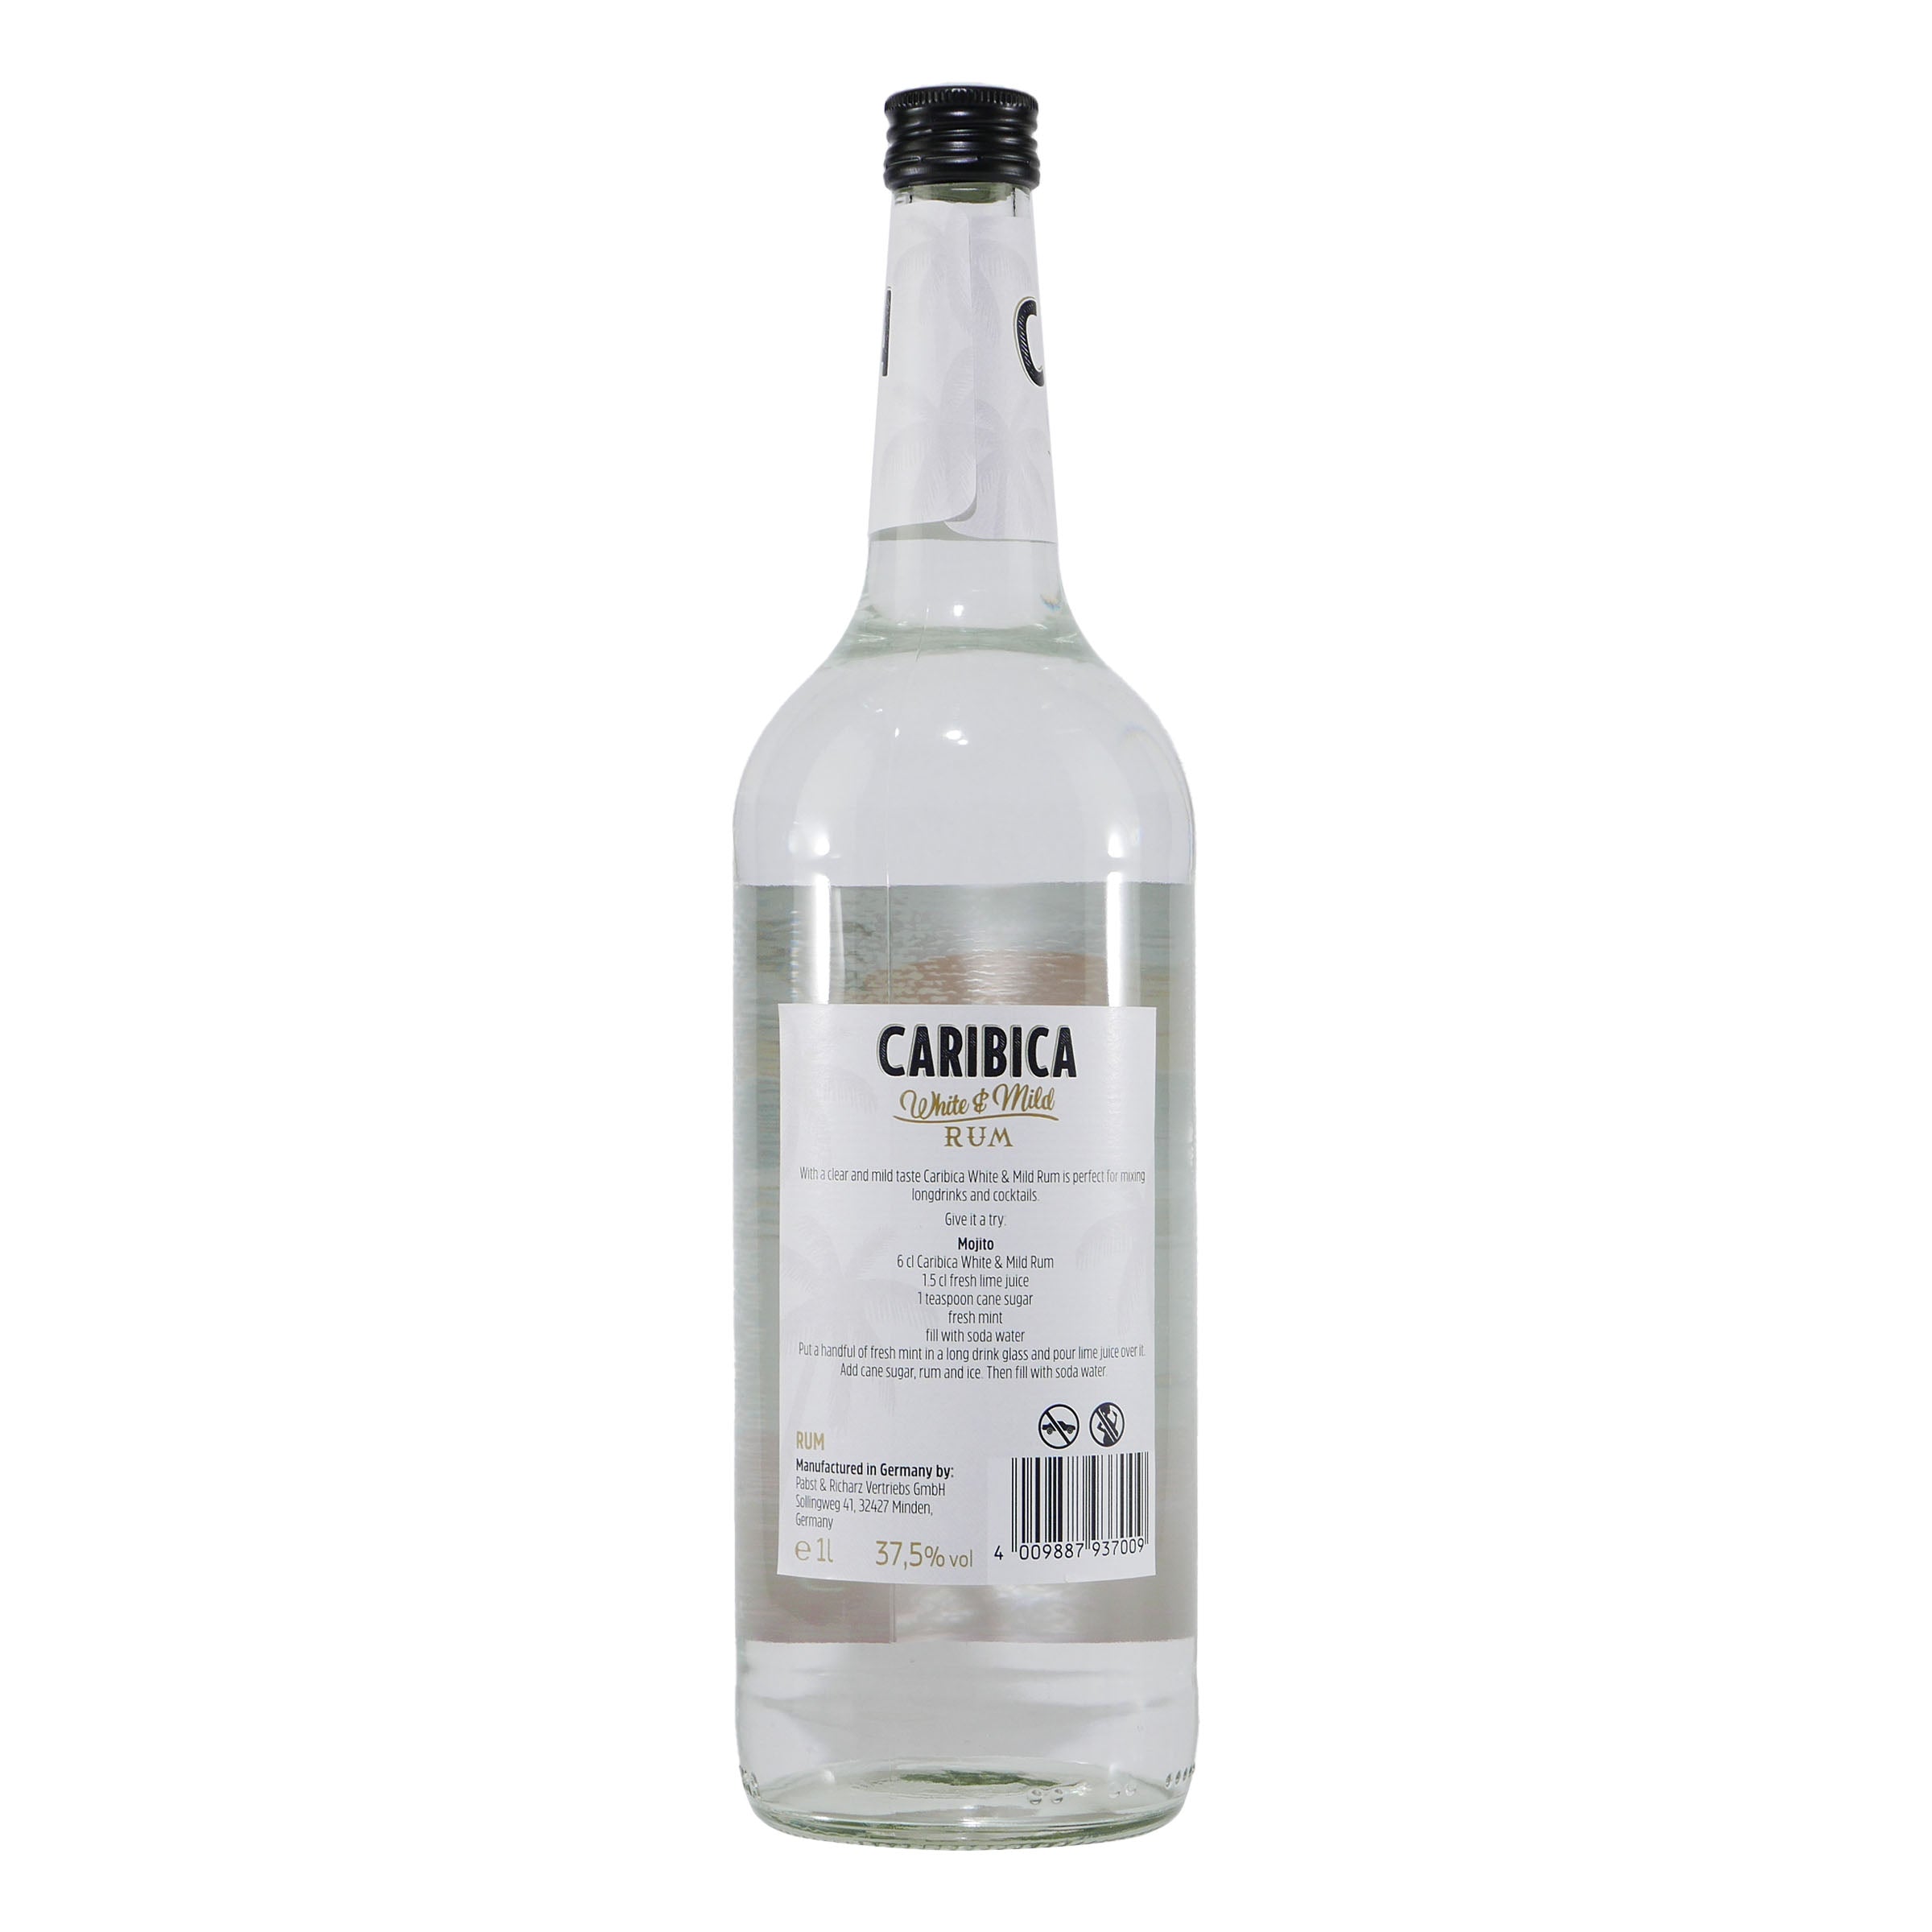 Caribica White & Mild Rum (6 x 1,0L)